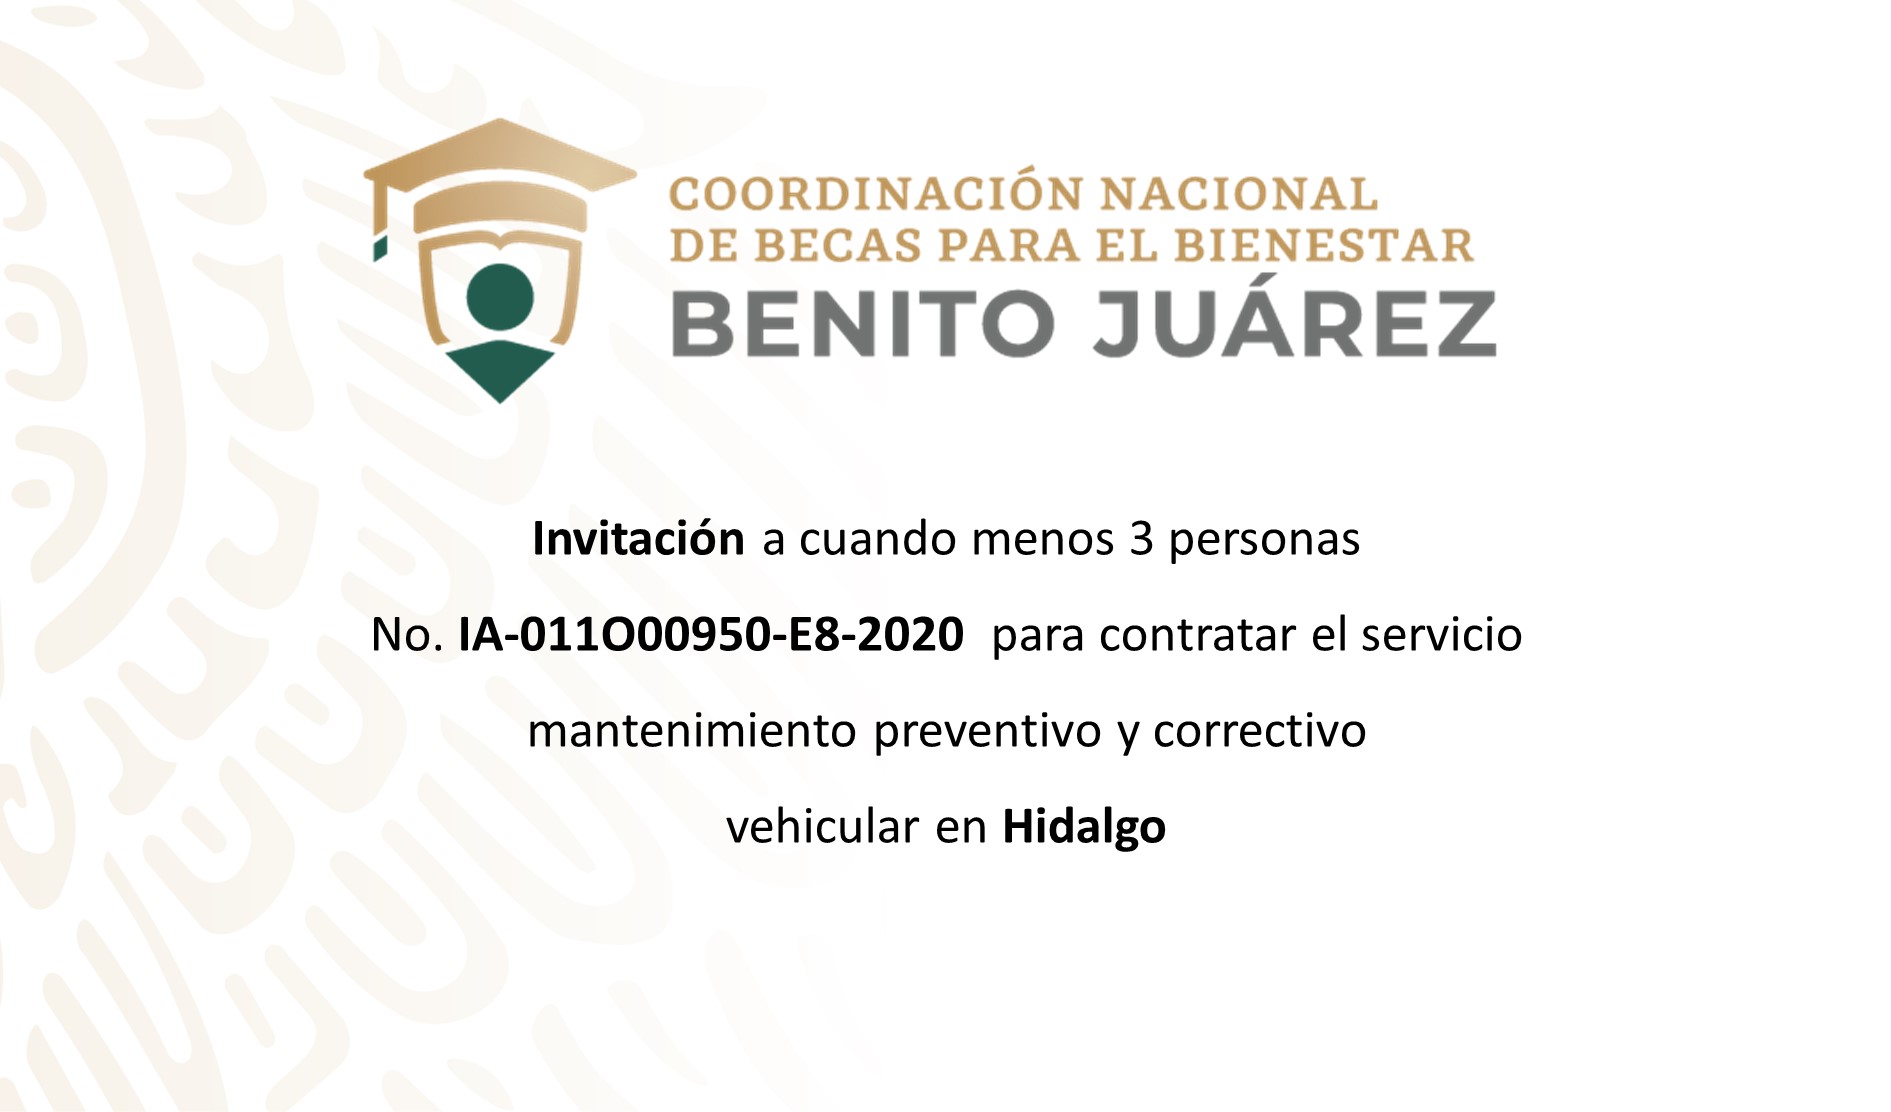 Invitación a cuando menos tres personas para contratar el servicio de mantenimiento vehicular en Hidalgo